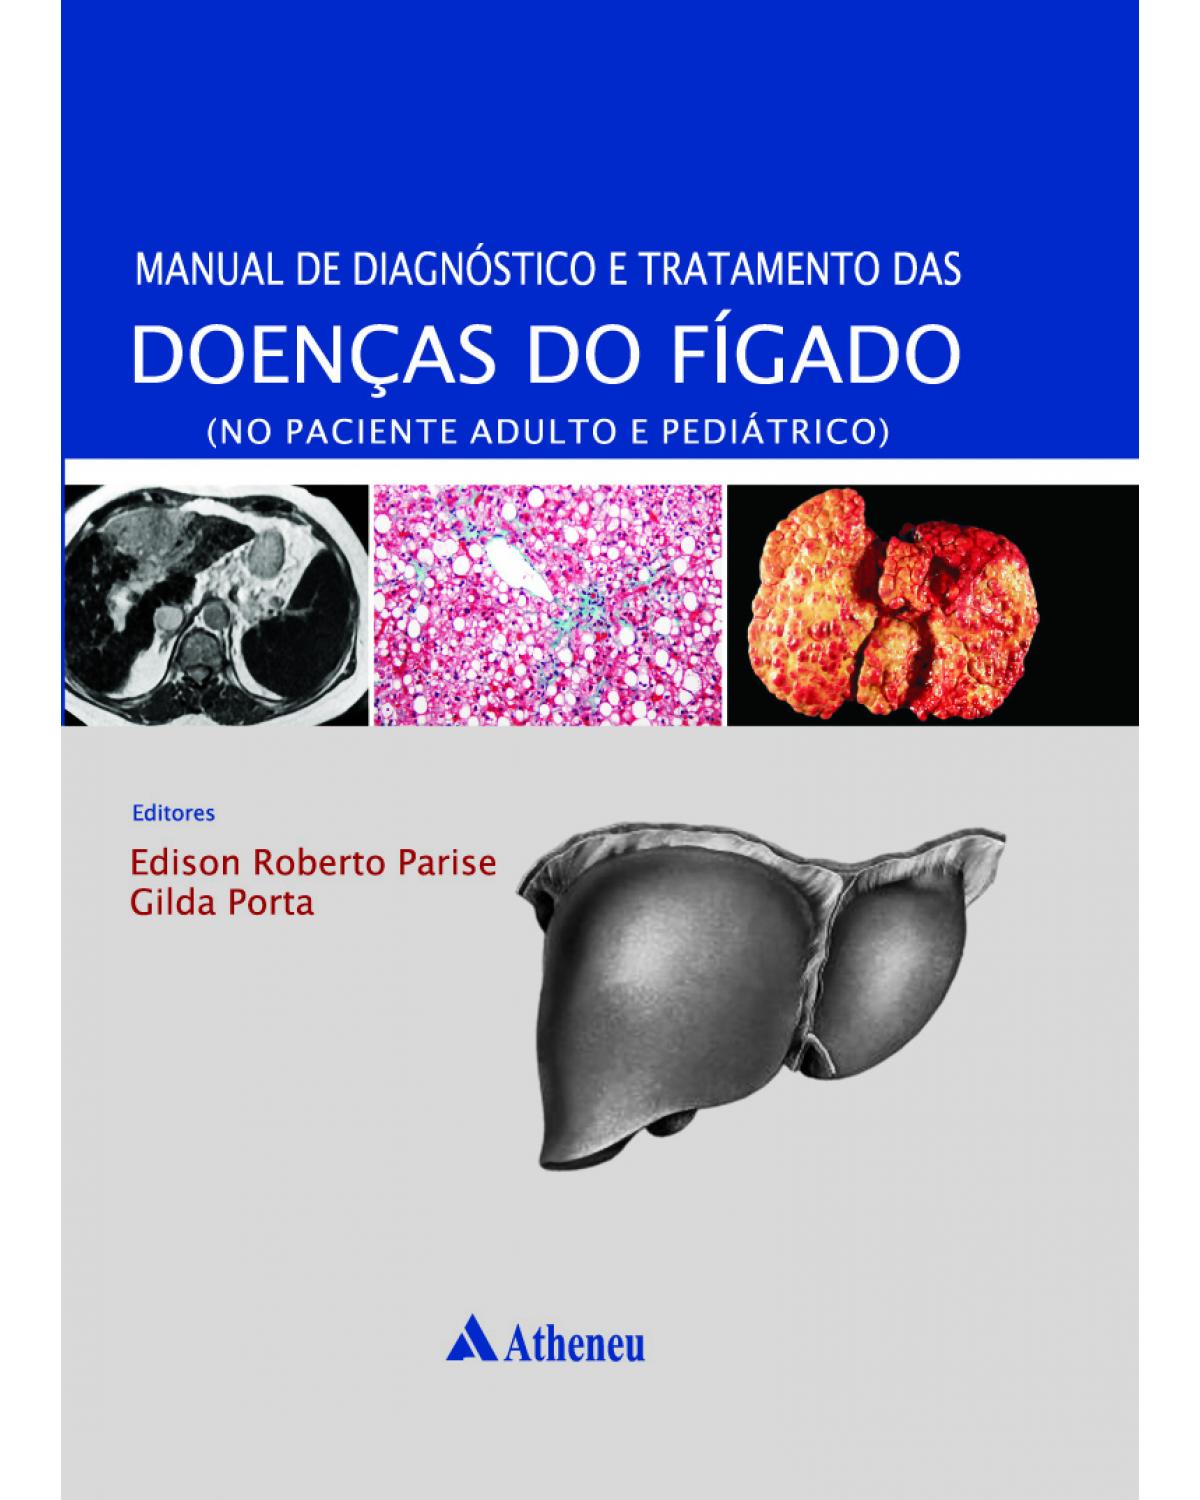 Manual de diagnóstico e tratamento das doenças do fígado - no aciente adulto e pediátrico - 1ª Edição | 2010